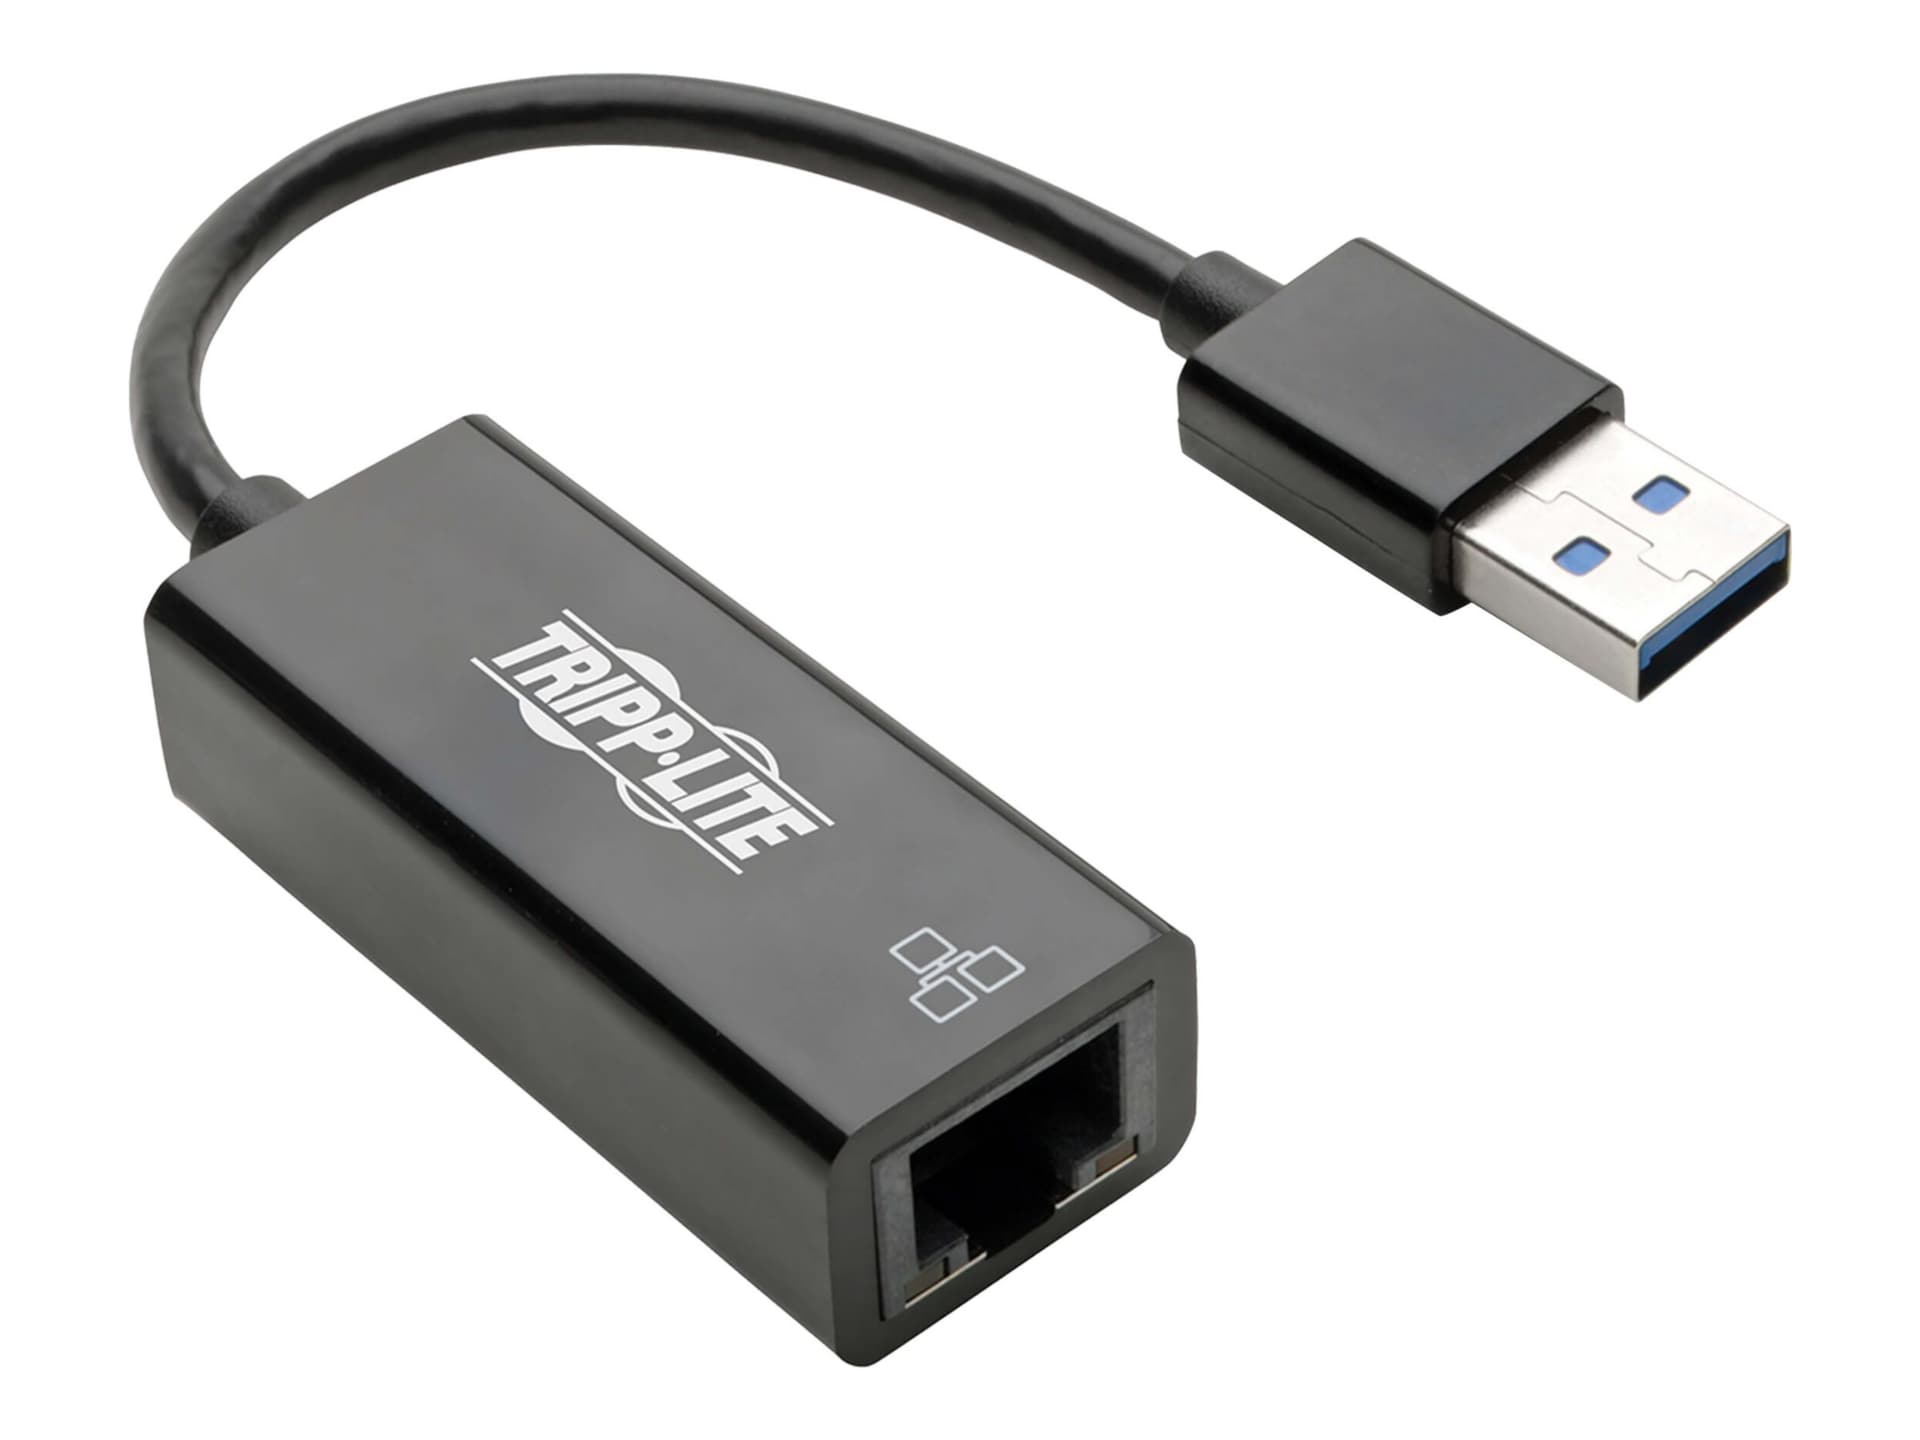 Tripp Lite USB 3.0 SuperSpeed to Gigabit Ethernet Adapter RJ45 10/100/1000  Mbps - network adapter - USB 3.0 - Gigabit - U336-000-R - USB Cables 